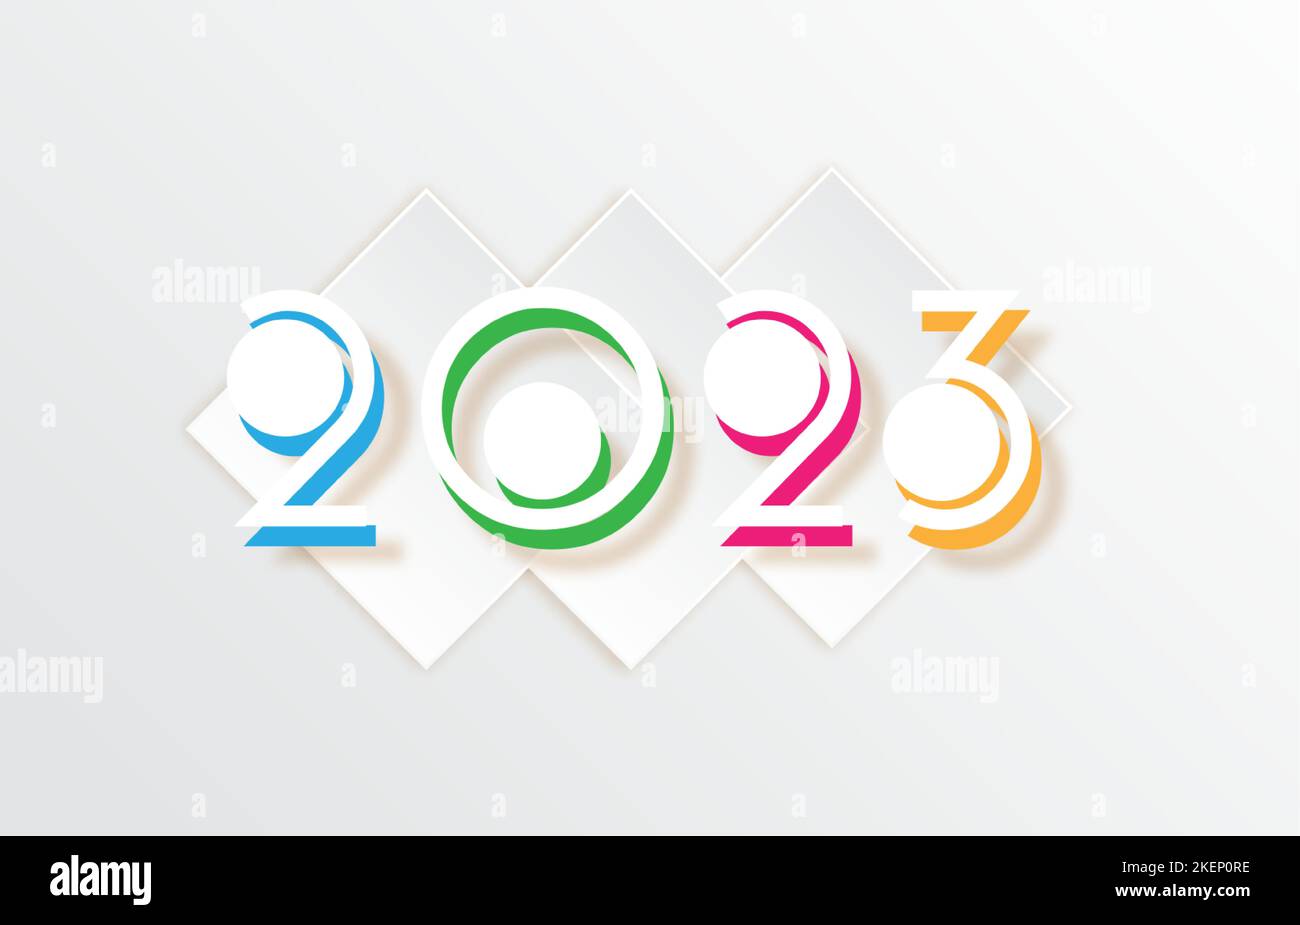 Frohes neues Jahr 2023 Text Design Patter, Papier geschnitten Typografie, Alphabet Buchstaben und Zahlen Vektor Illustration isoliert auf weißem Hintergrund Stock Vektor